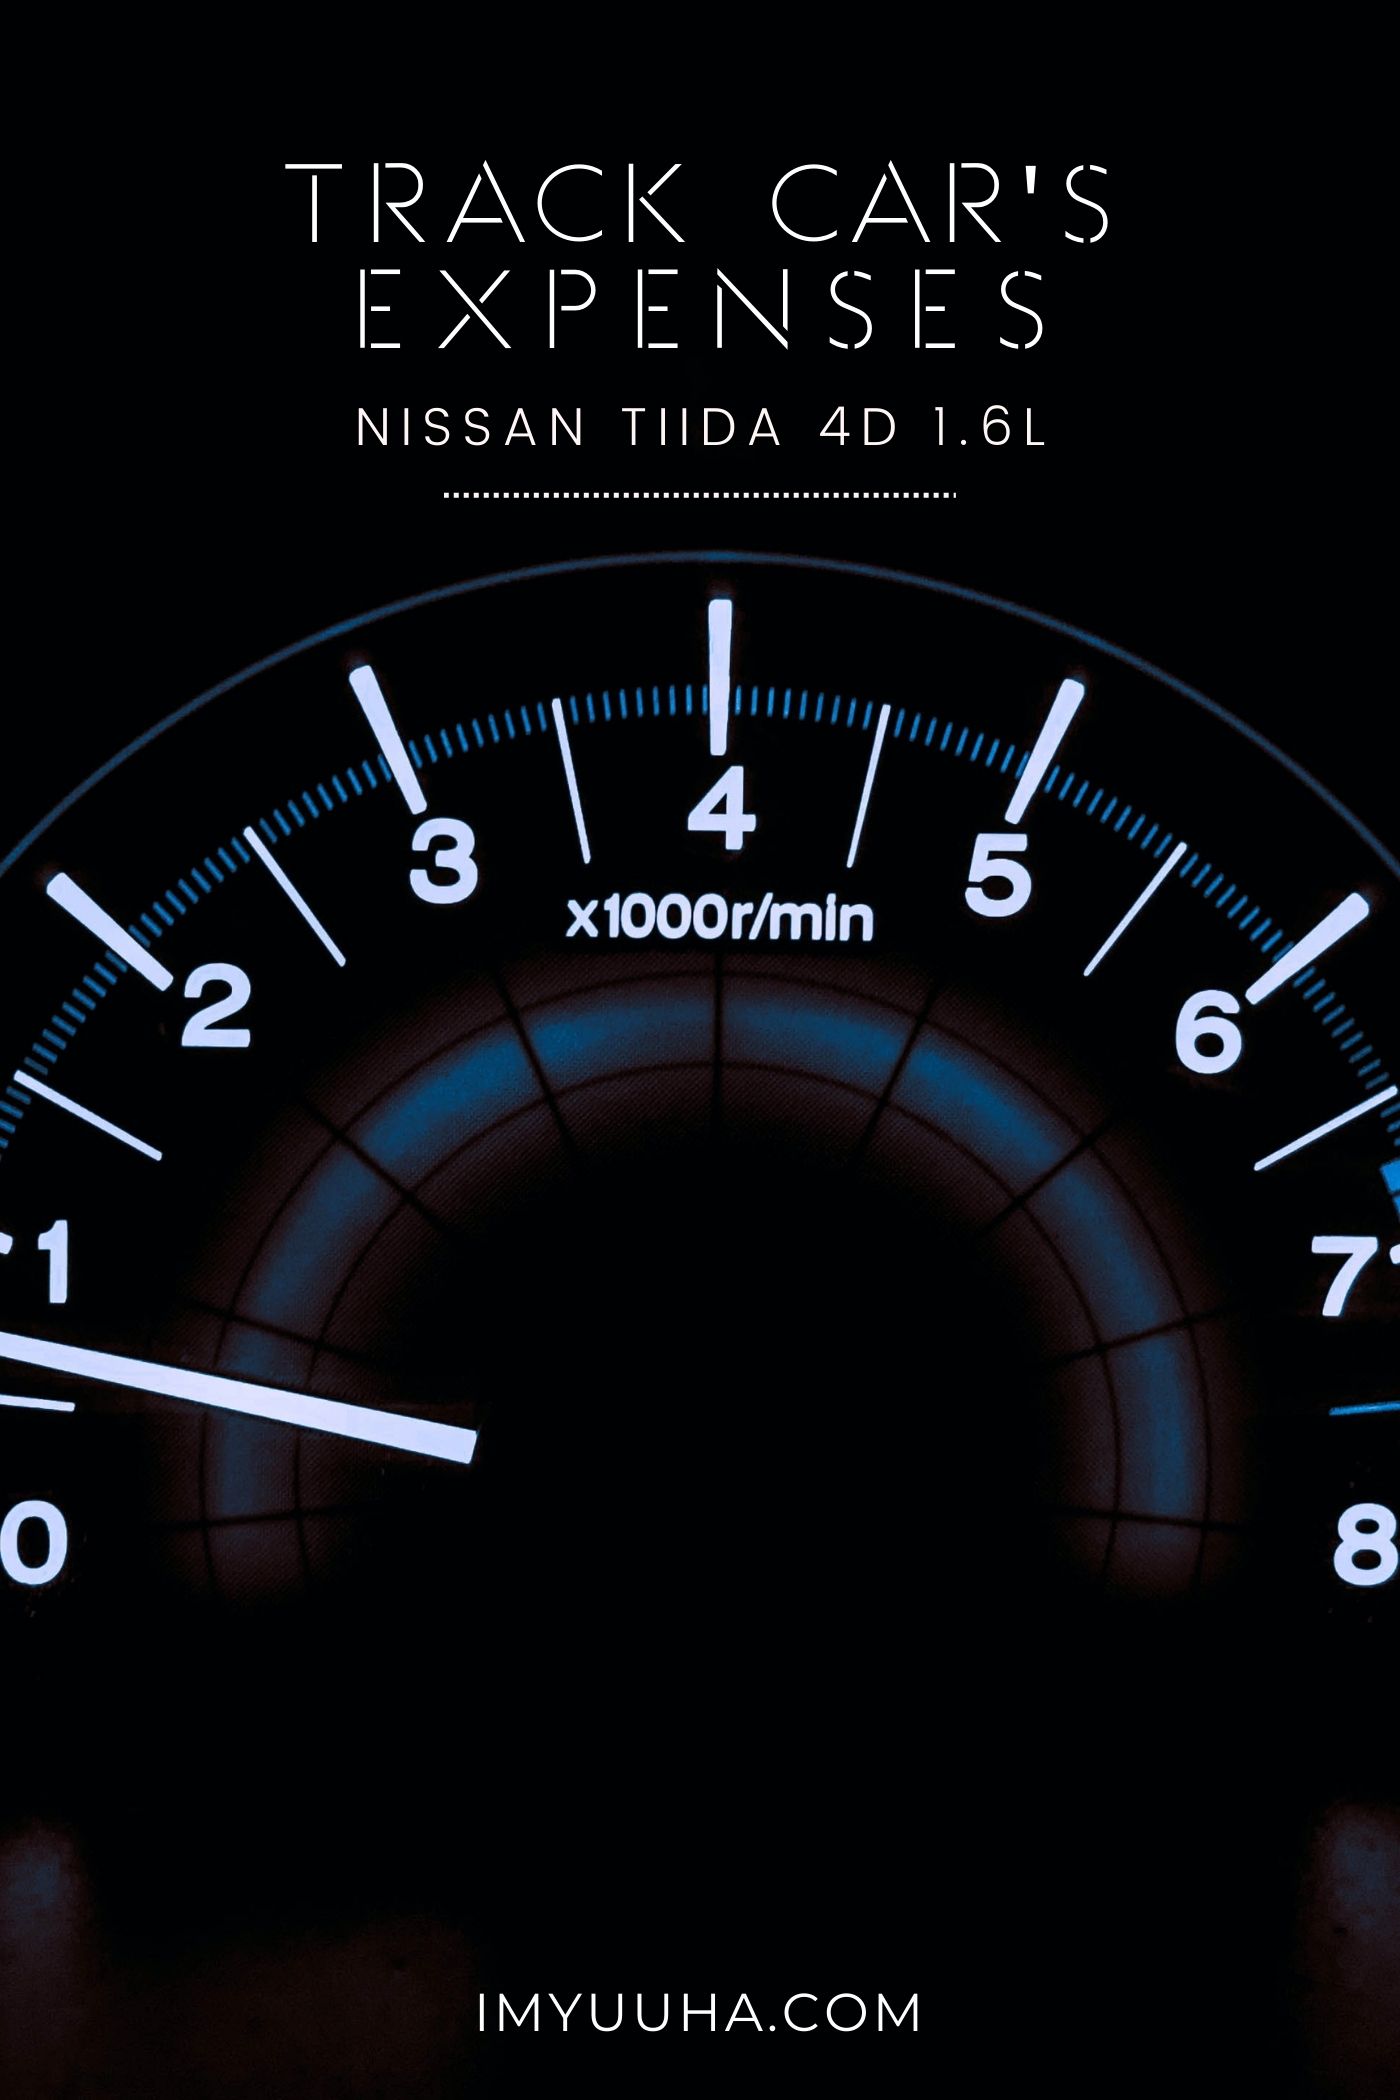 Nissan 日產 Tiida 4D 生活日常費用紀錄